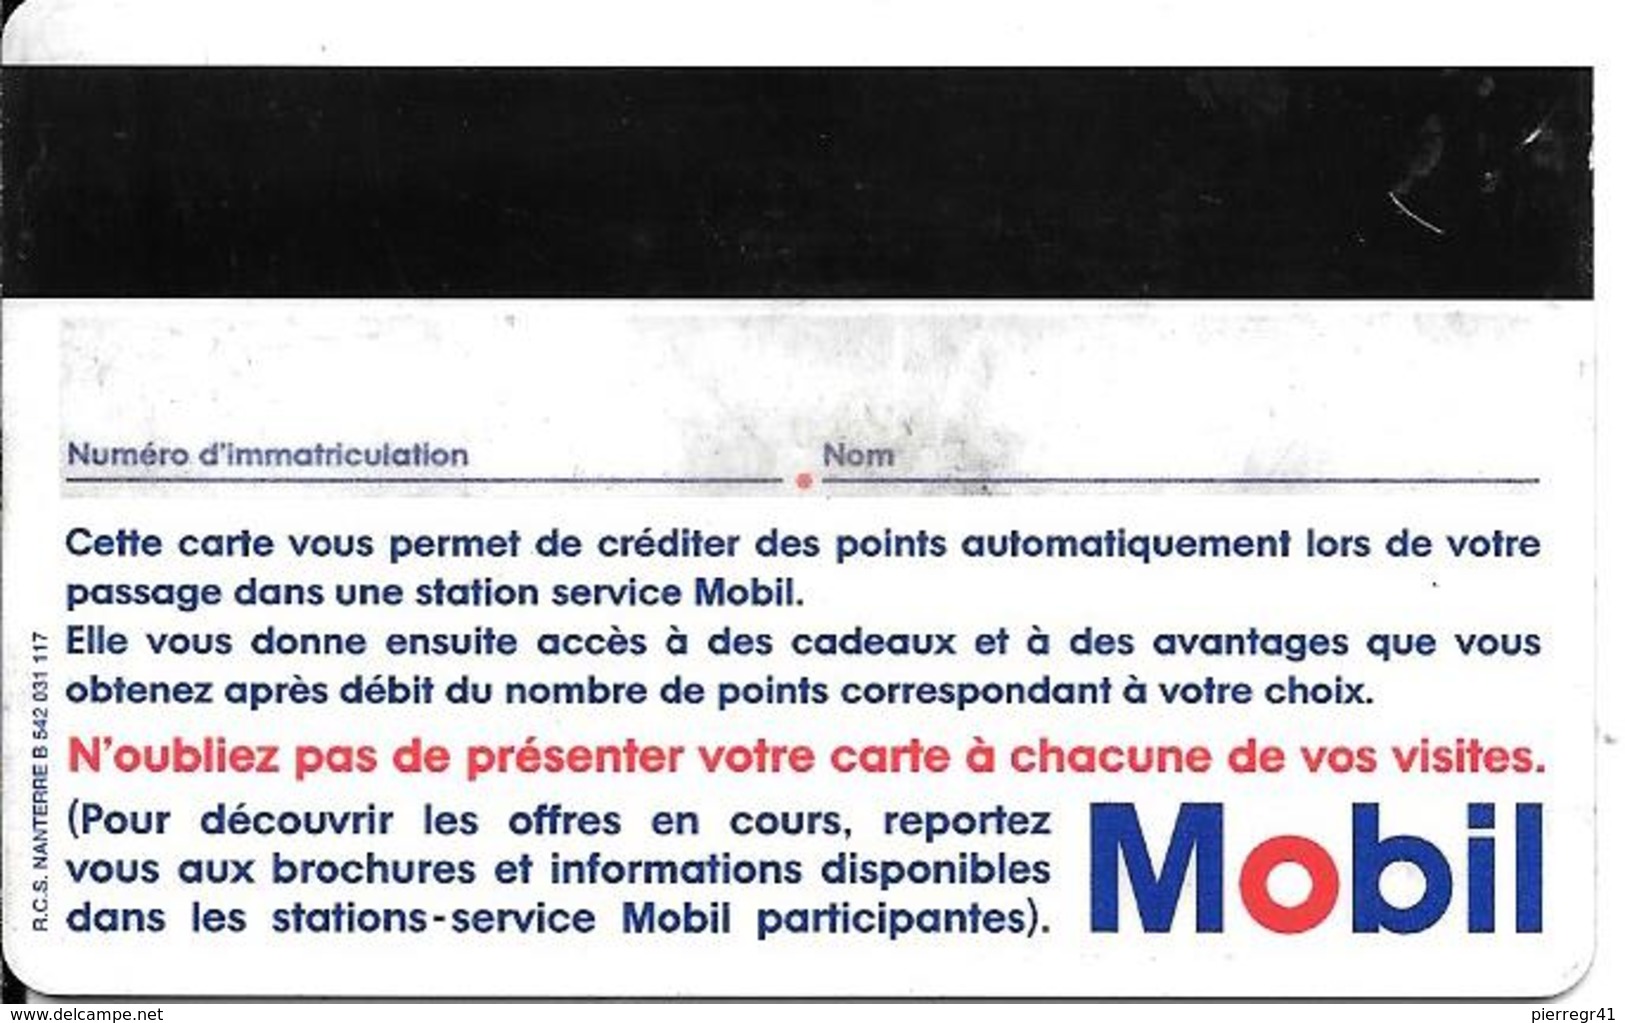 CARTE-MAGNETIQUE-MOBILPLUS-ROUGE-Exp 31/12/97-V°Ecriture Bleu Et Rouge-TB E - Car Wash